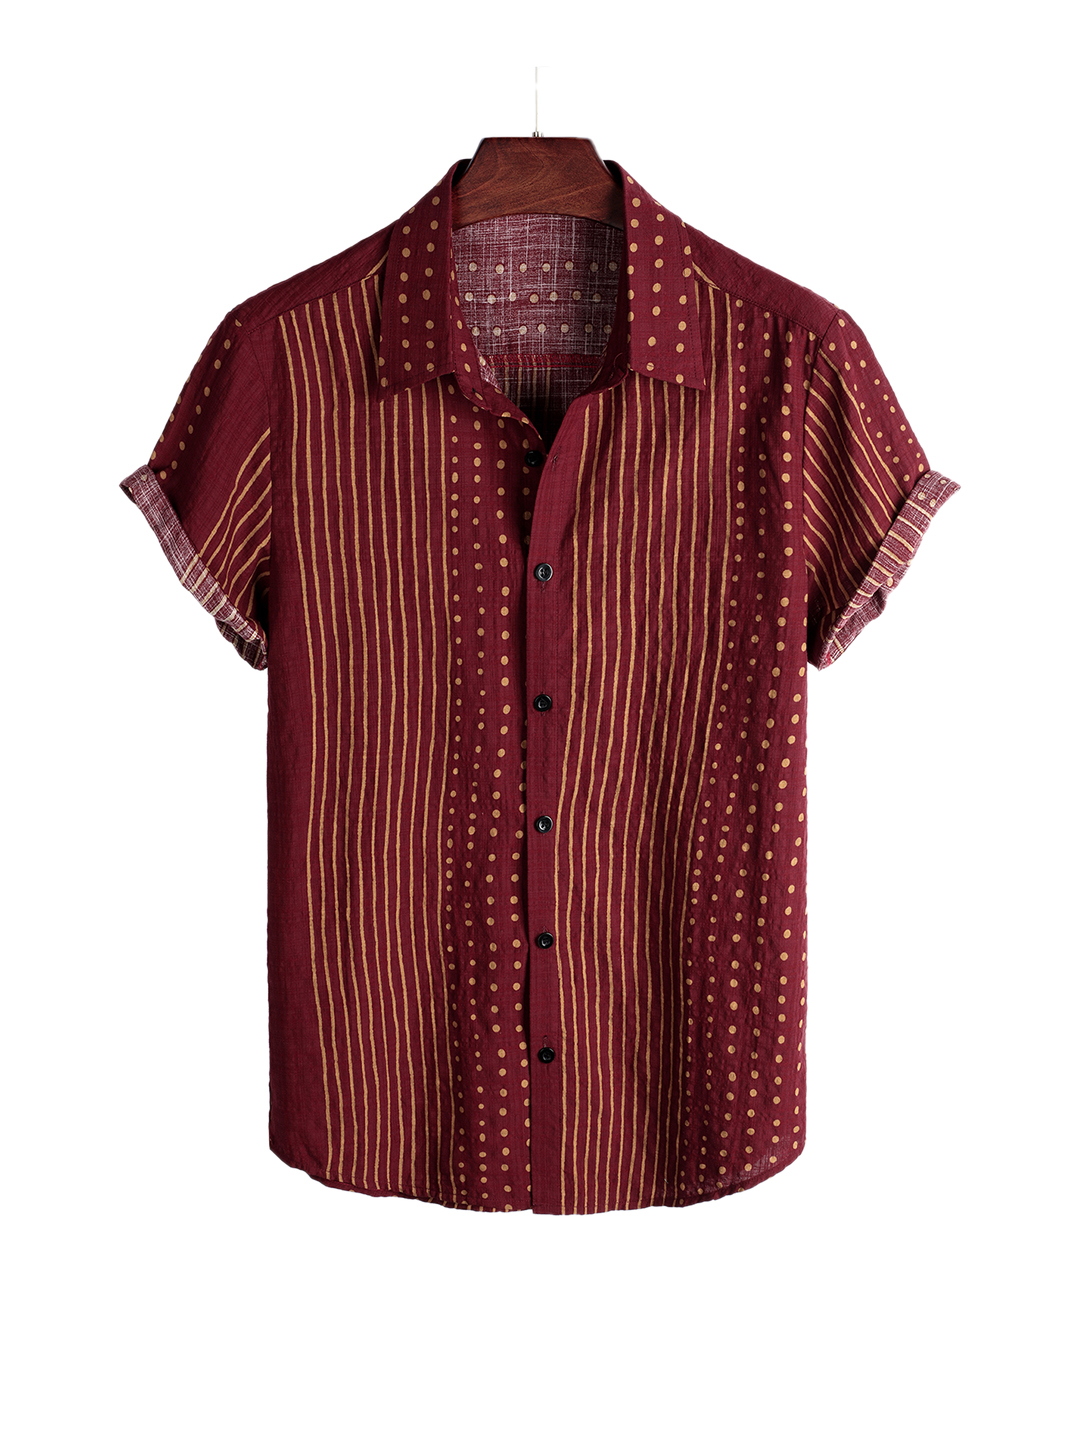 Juan Short Sleeve Casual Shirt-poisonstreetwear.com